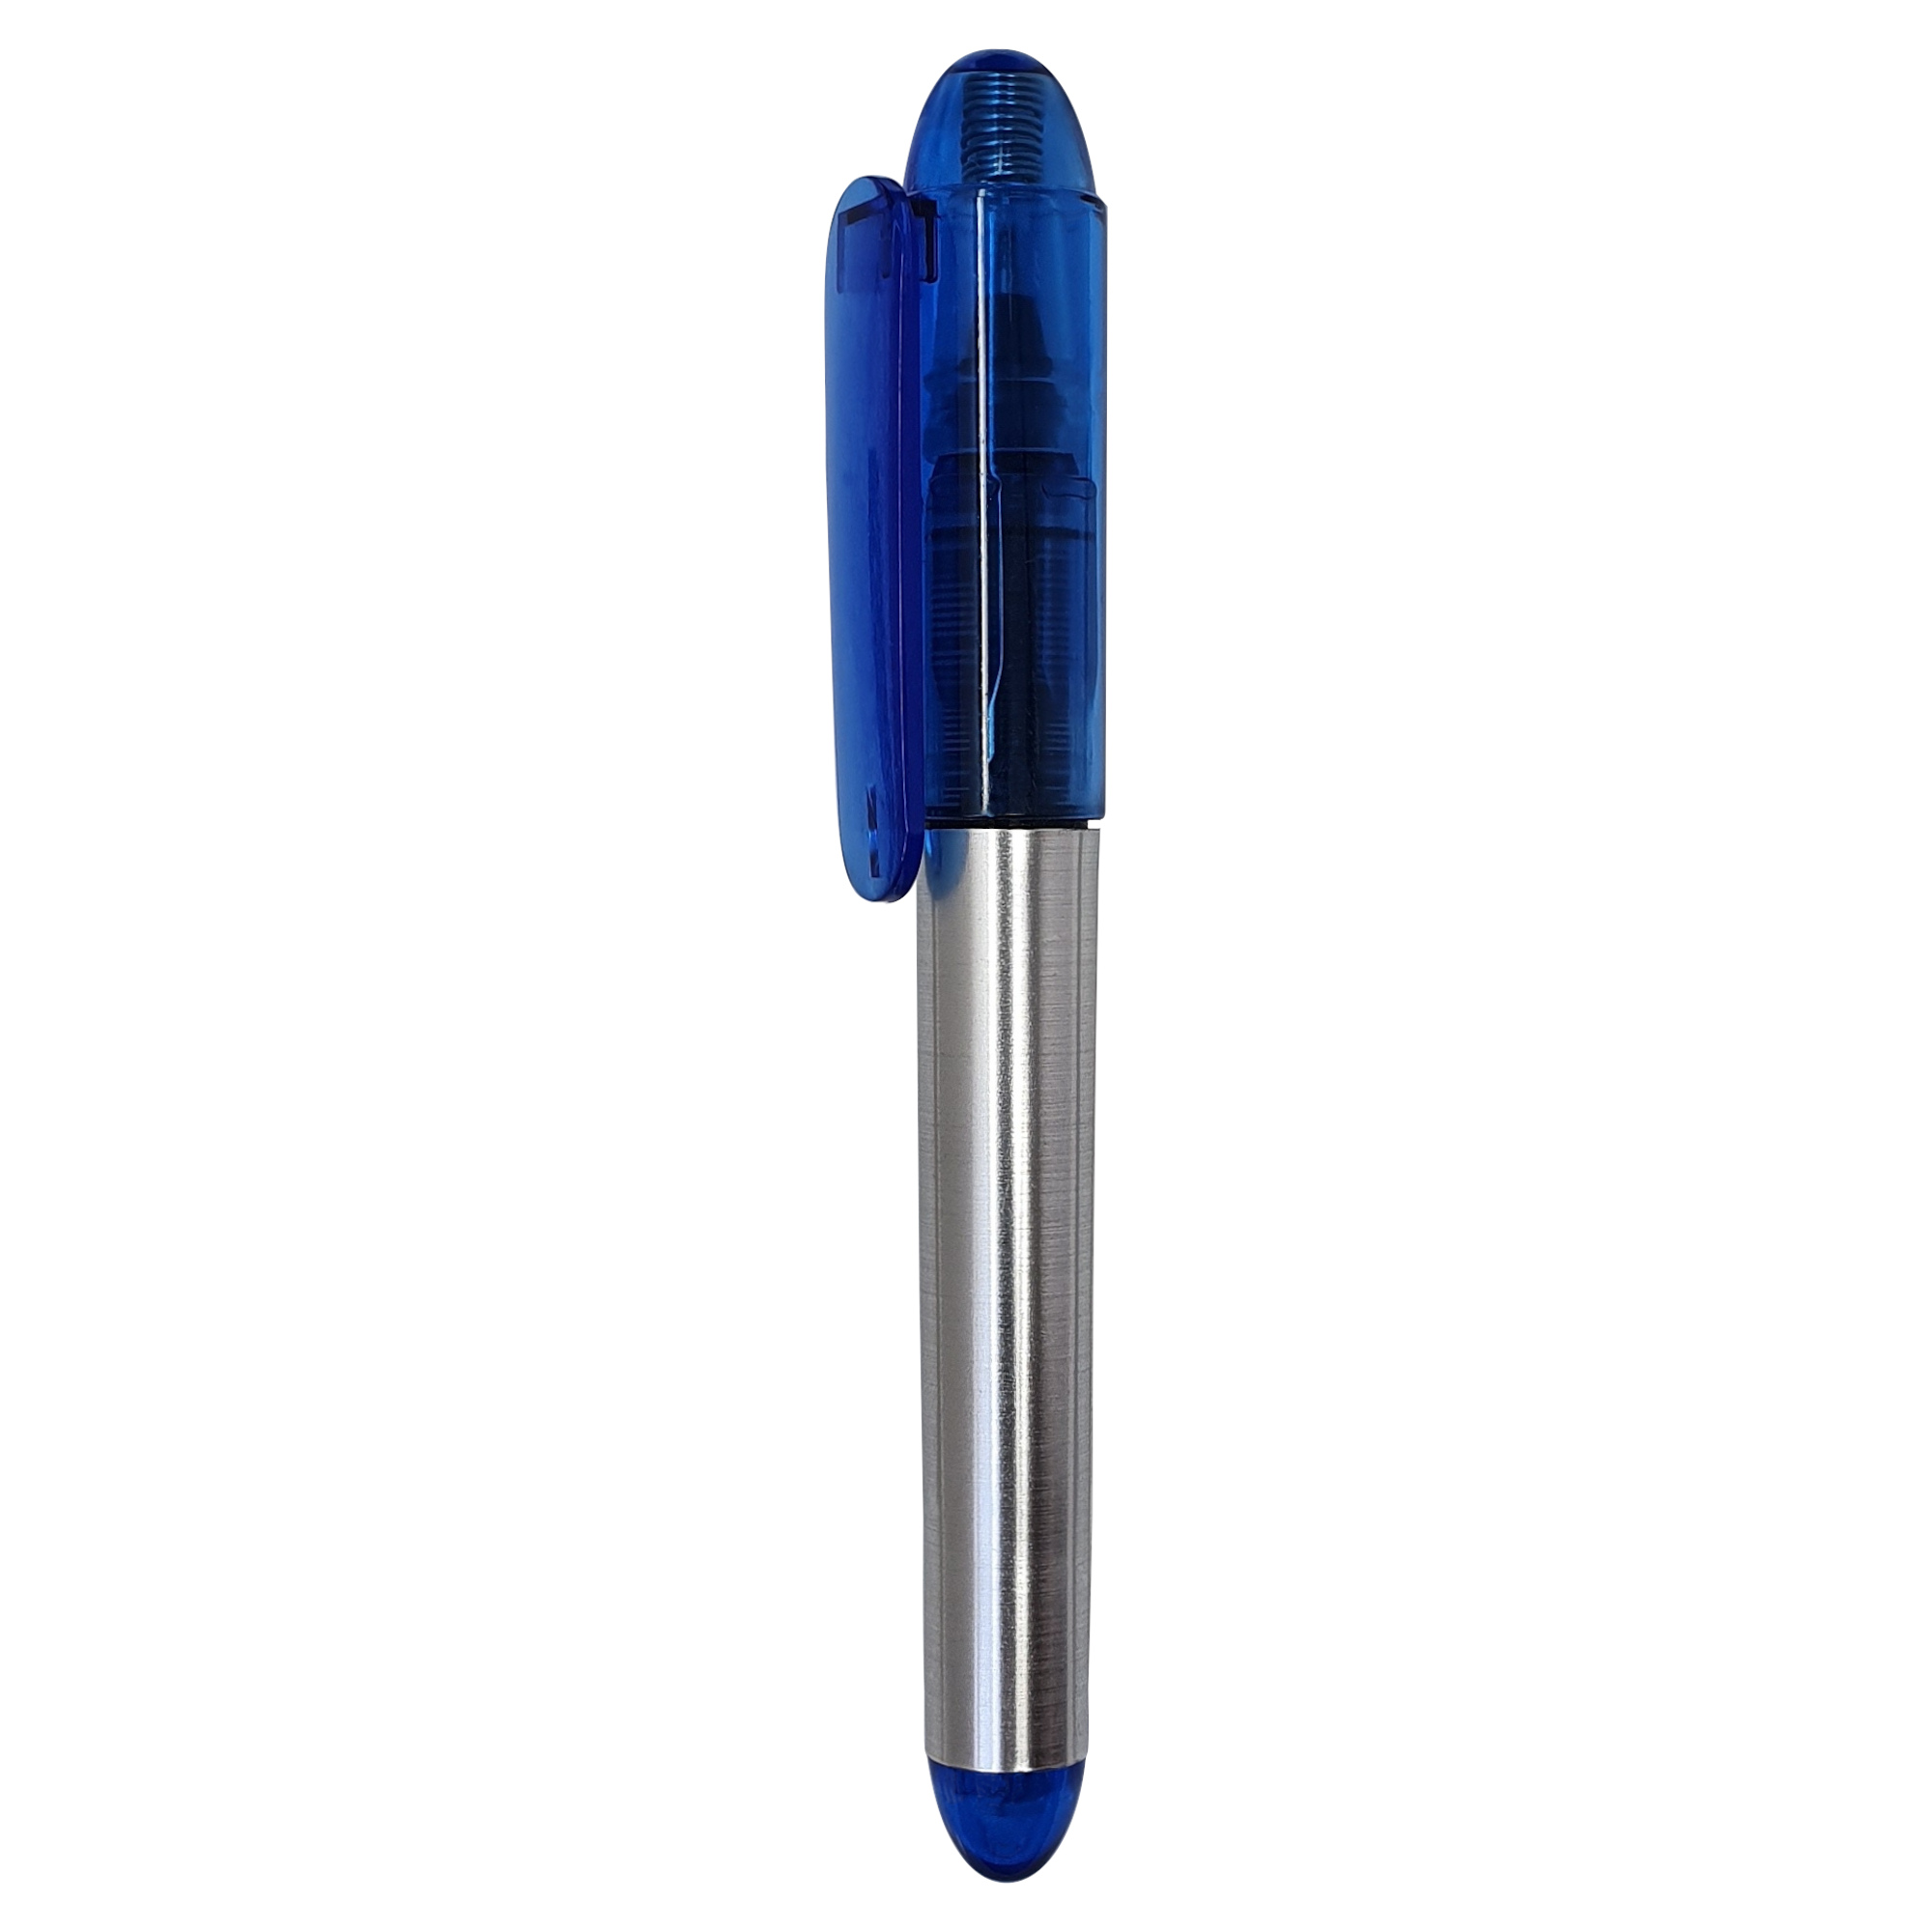 Roller de tinta líquida Compact
Color azul oscuro y plateado